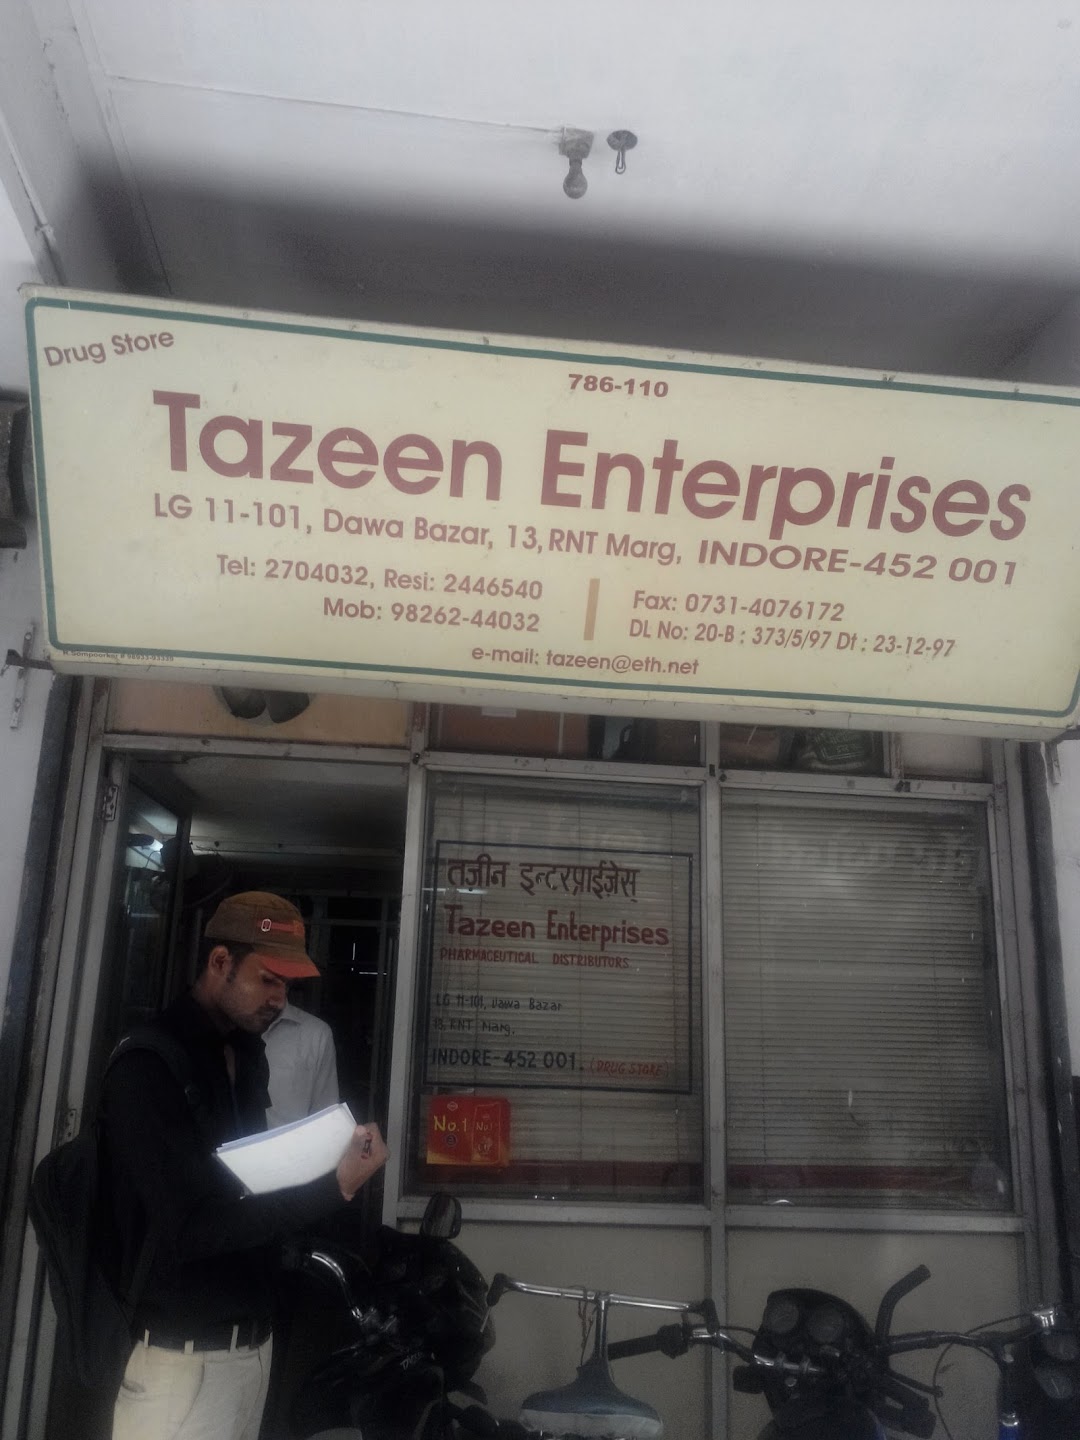 Tazeen Enterprises